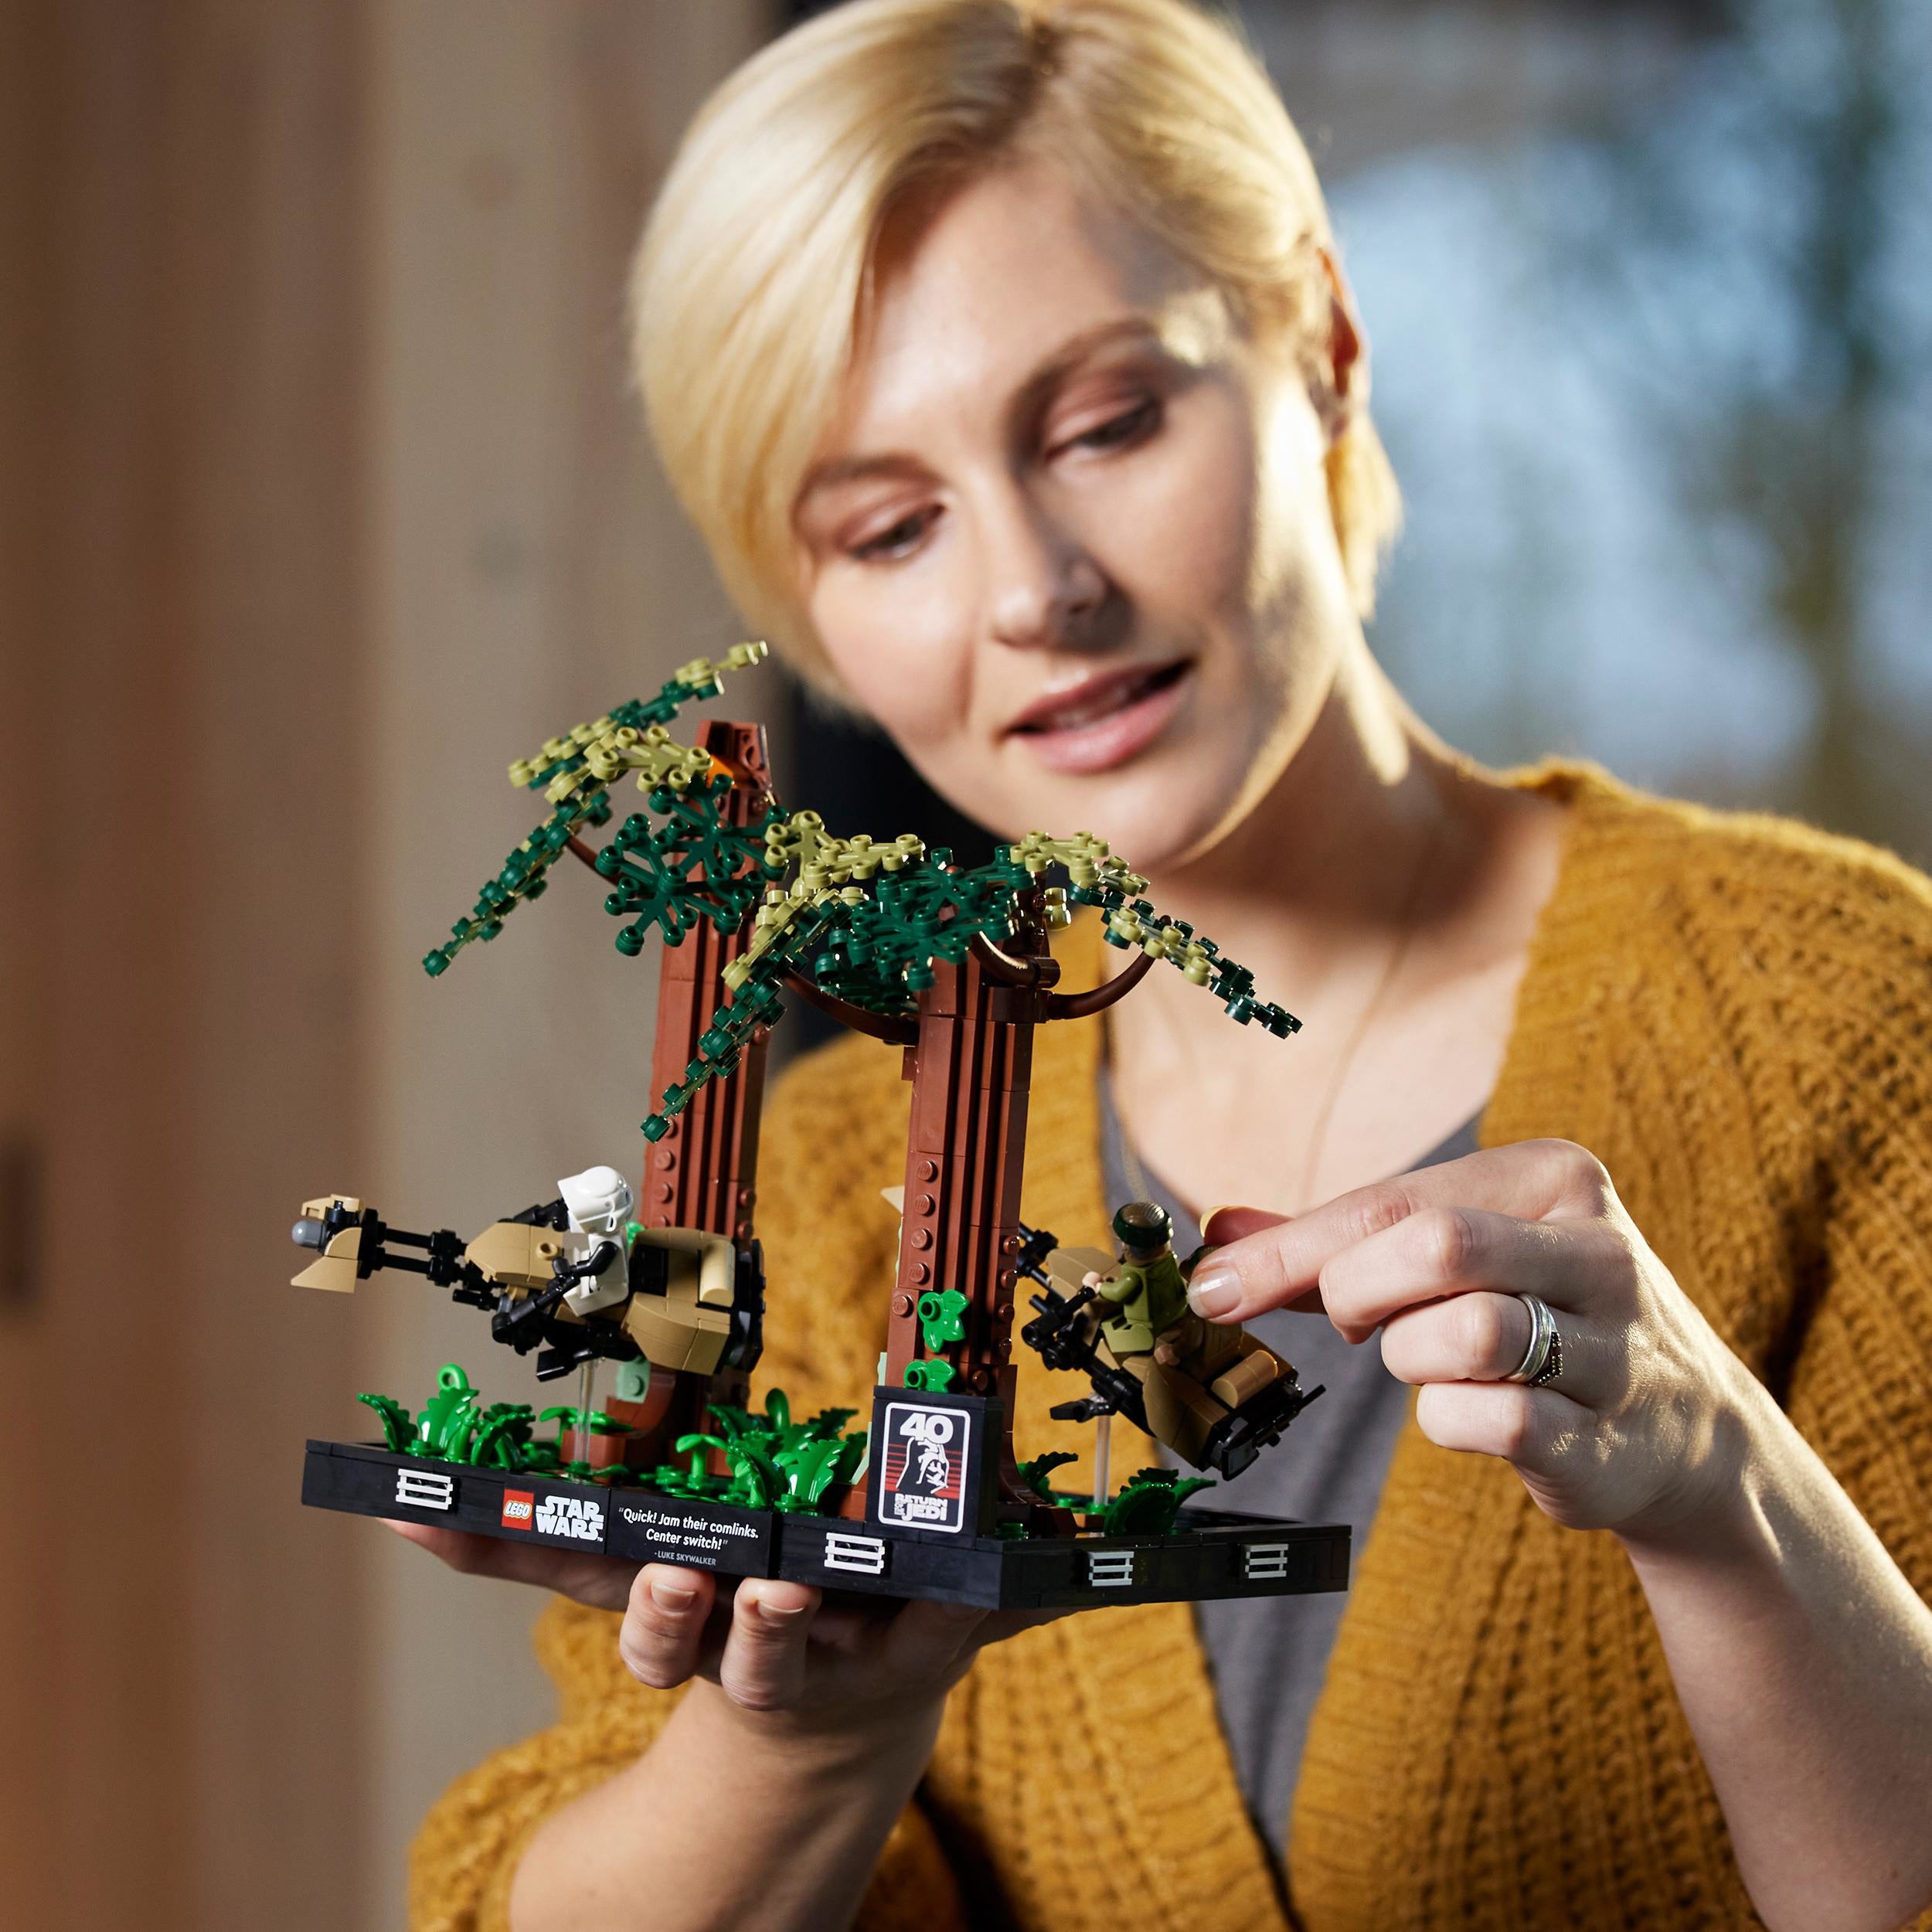 75353 - LEGO Star Wars - Diorama Inseguimento con lo speeder su Endor